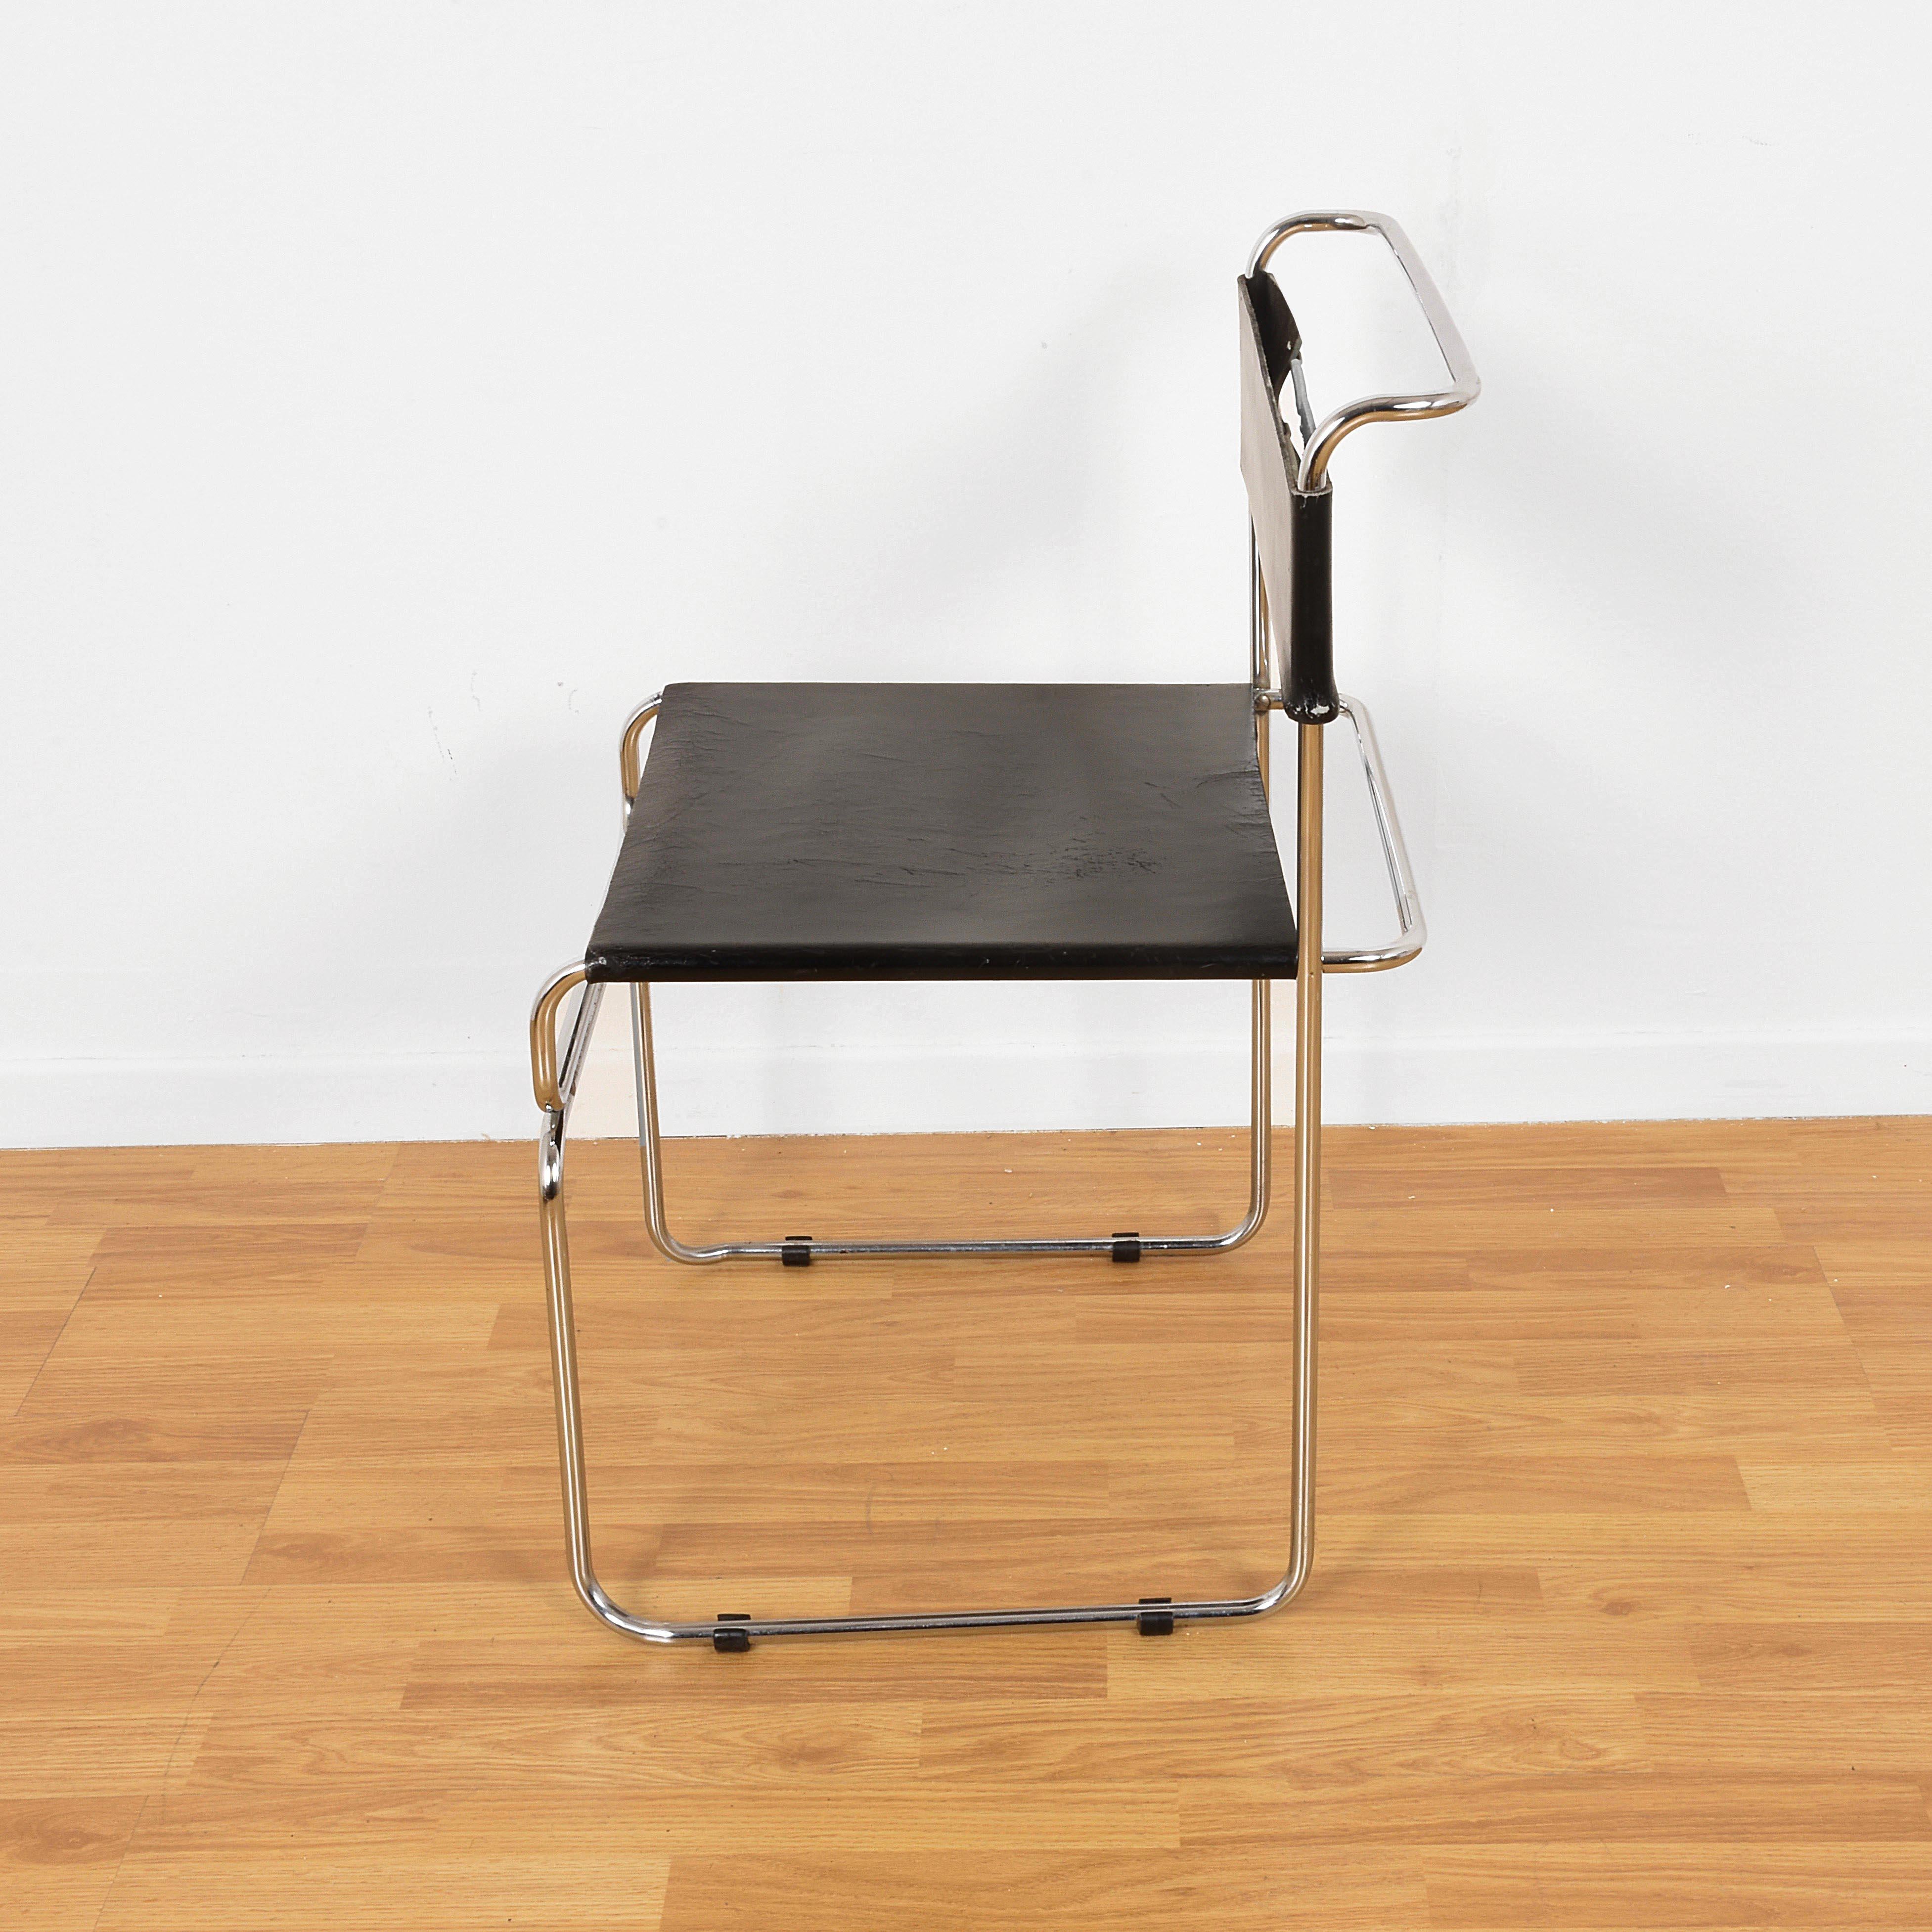 Zwei Esszimmerstühle, entworfen von Giovanni Carini und hergestellt von Planula im Jahr 1970. Jeder Stuhl hat ein verchromtes Metallrohrgestell, Sitz und Rückenlehne sind mit schwarzem Leder bezogen.
Sehr praktisch, weil stapelbar.